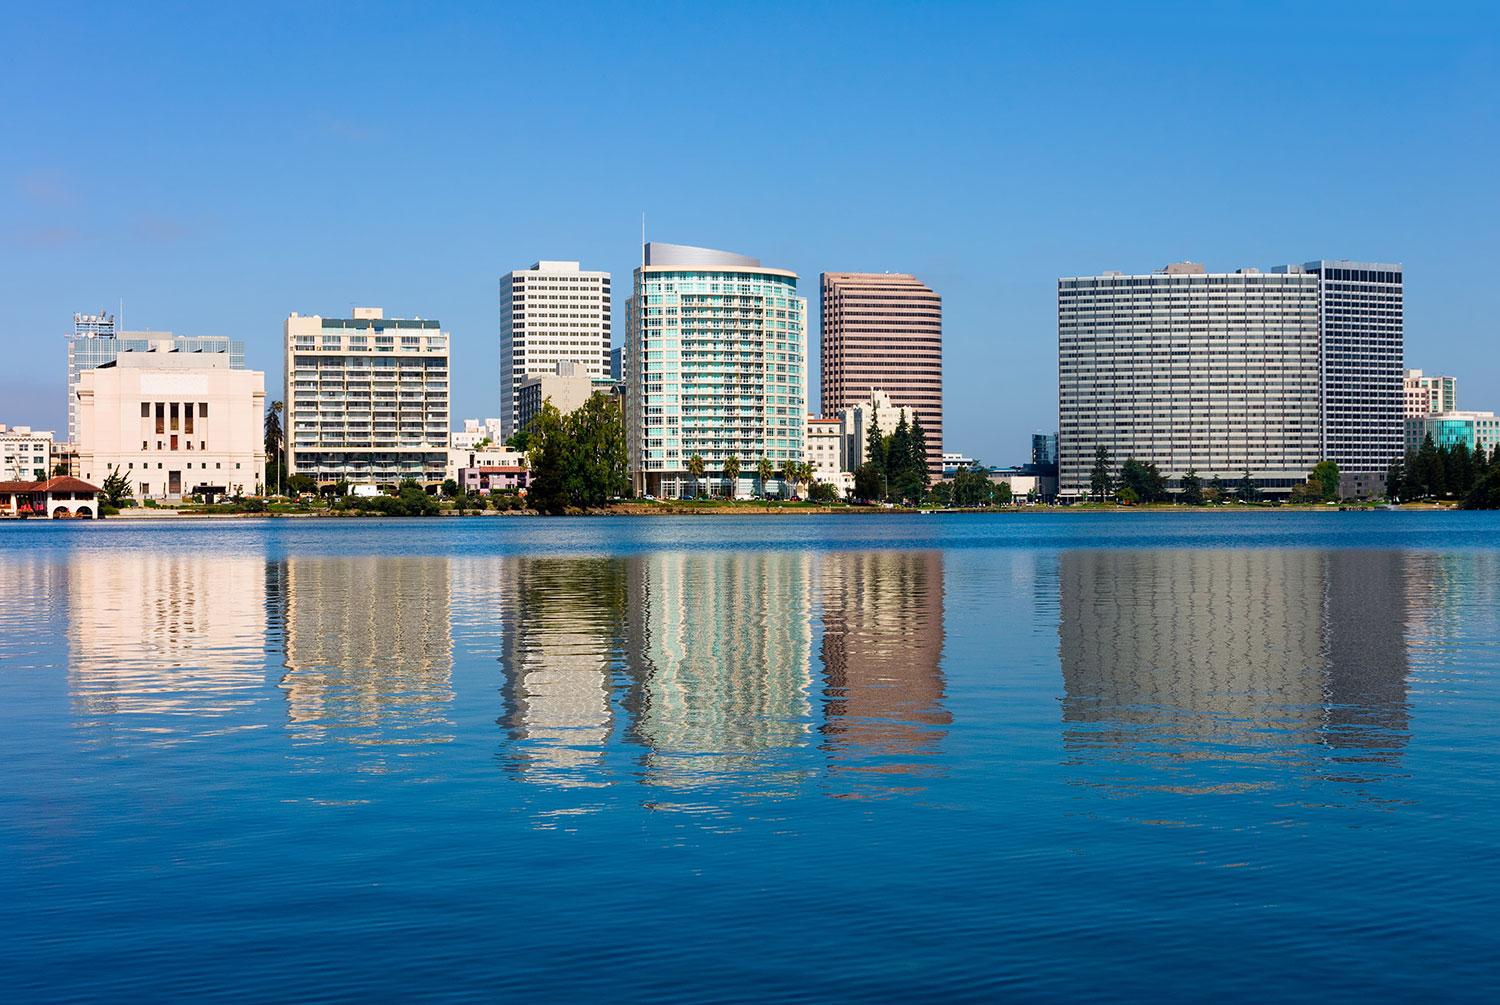 Oakland, USA Industri- och hamnstaden som är betydligt ovänligare än sin granne San Francisco och rankas trea på värstinglistan.